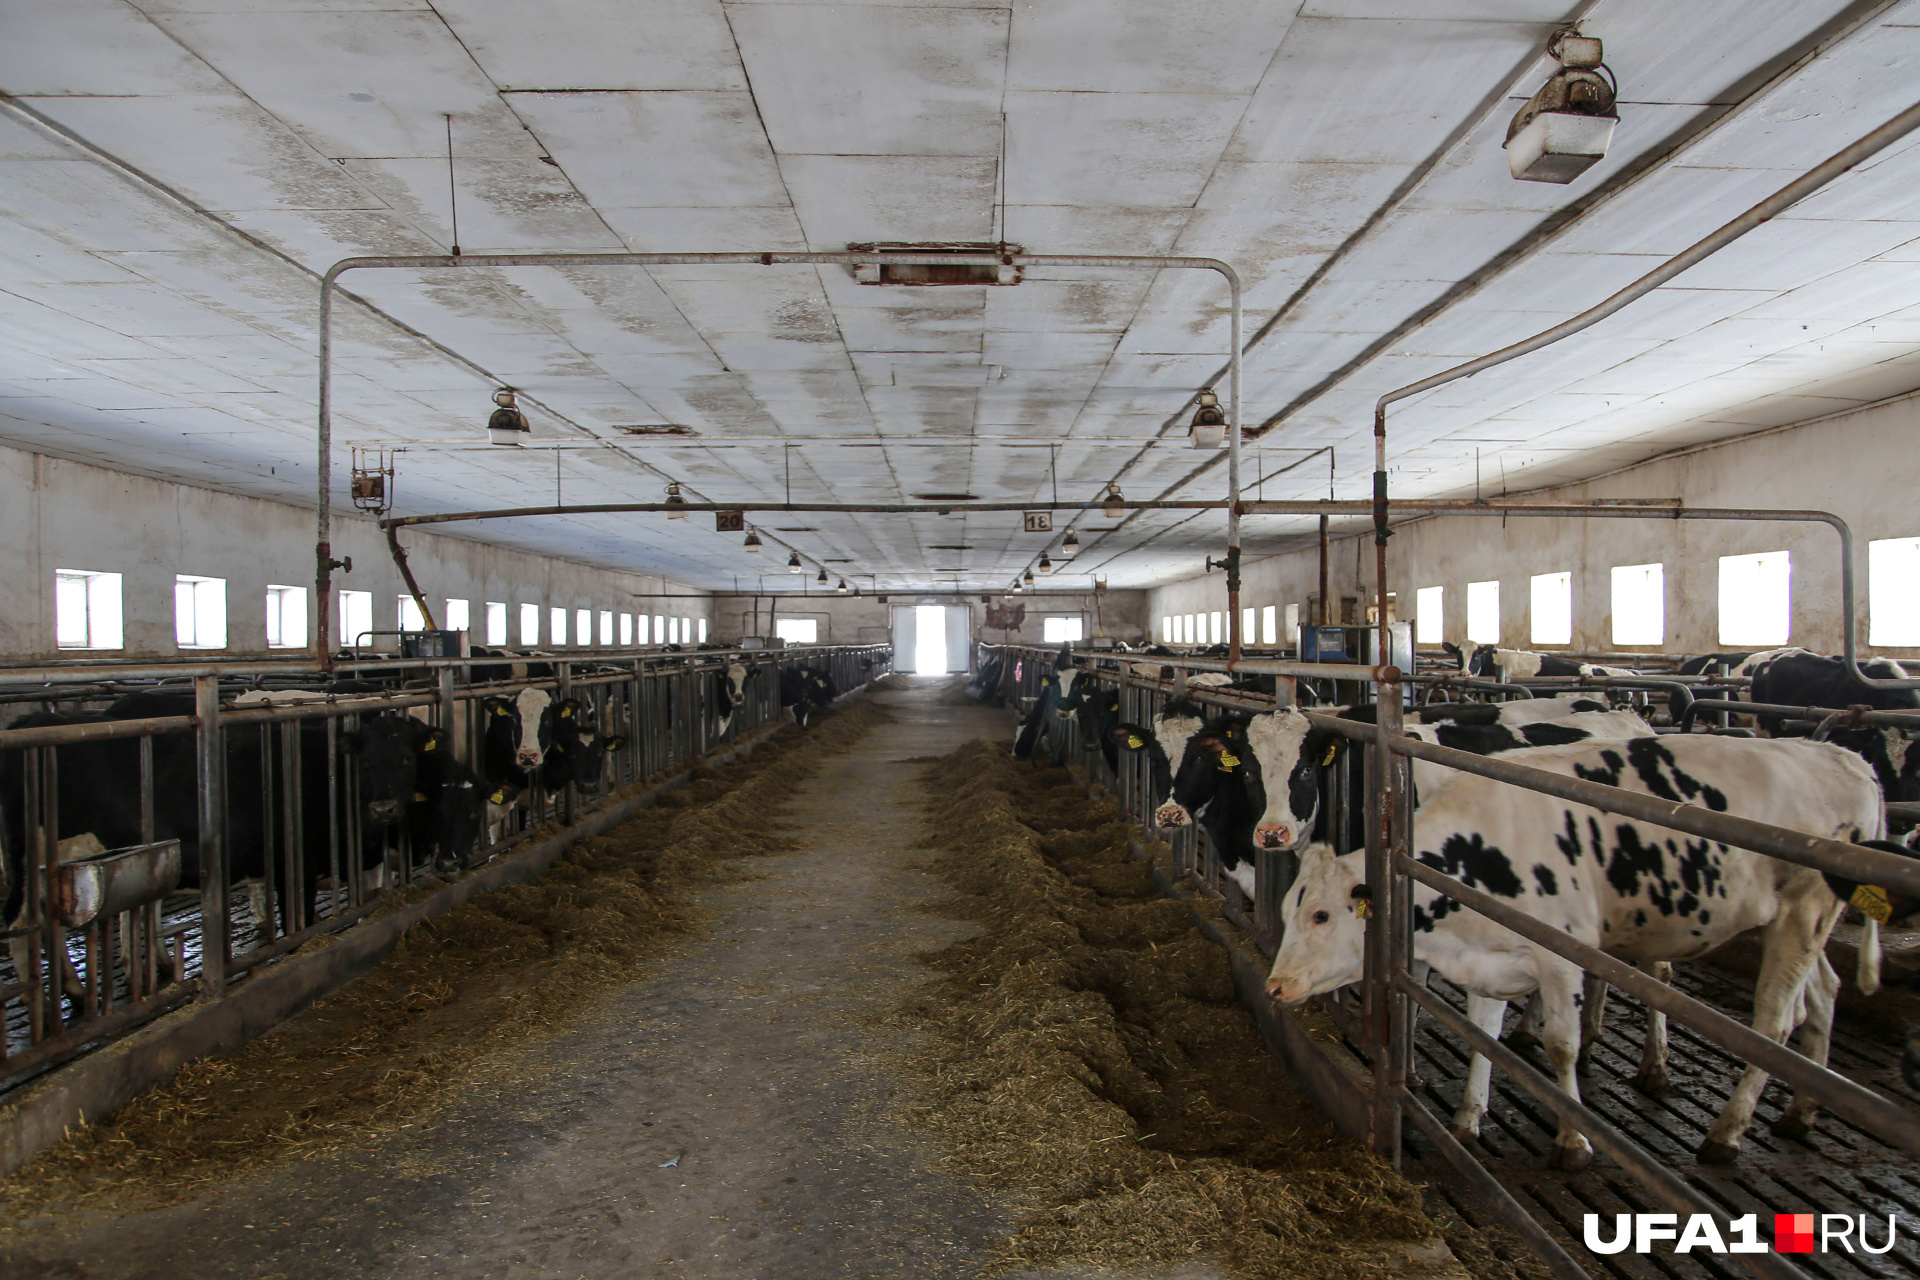 По словам директора совхоза, коровы должны содержаться в холодных помещениях, поэтому использование систем отопления на ферме не предусмотрено